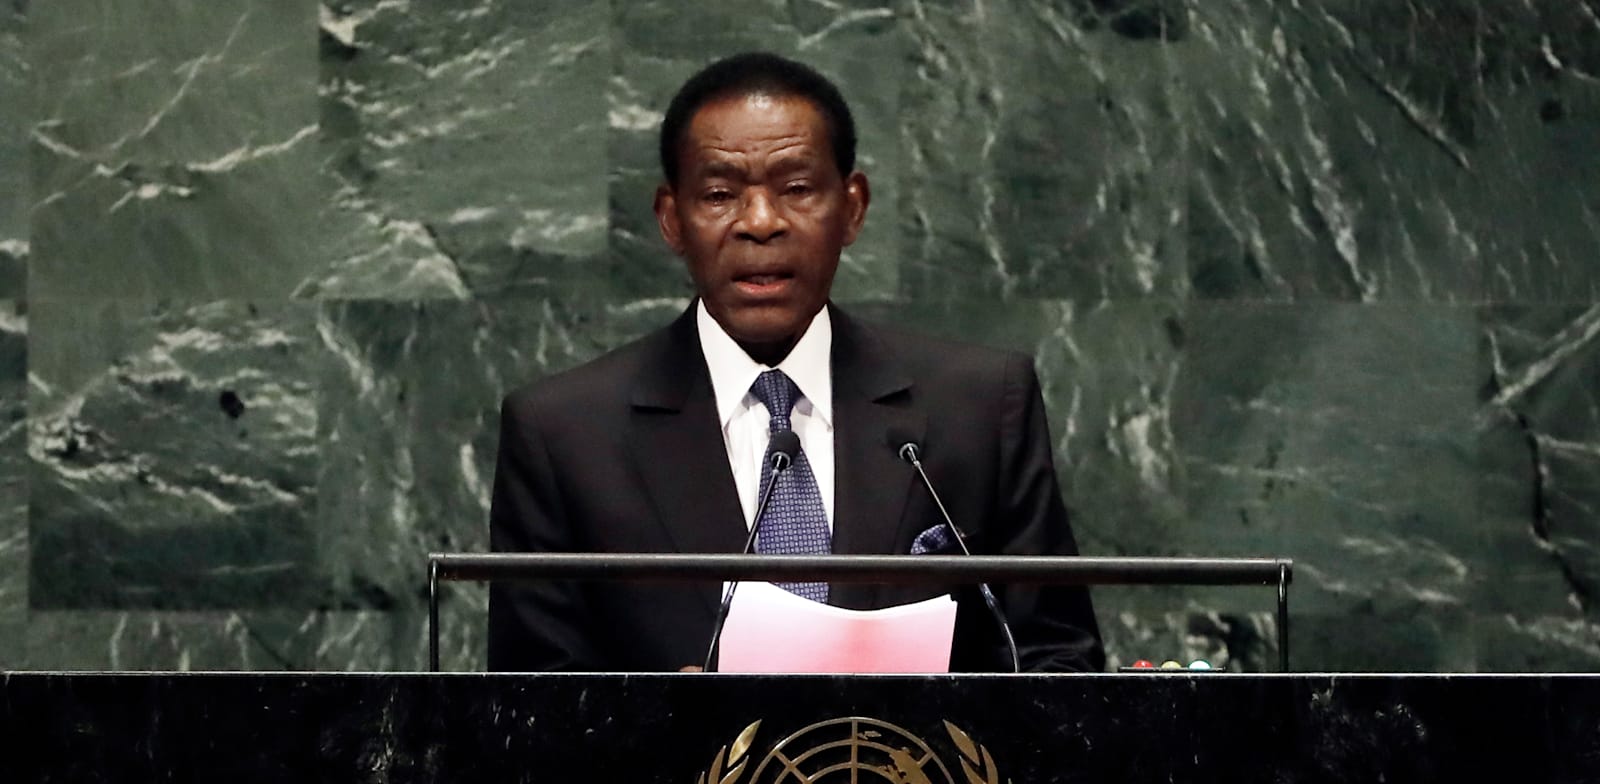 תאודורו מבאסוגו, נשיא גינאה המשוונית / צילום: Associated Press, Richard Drew